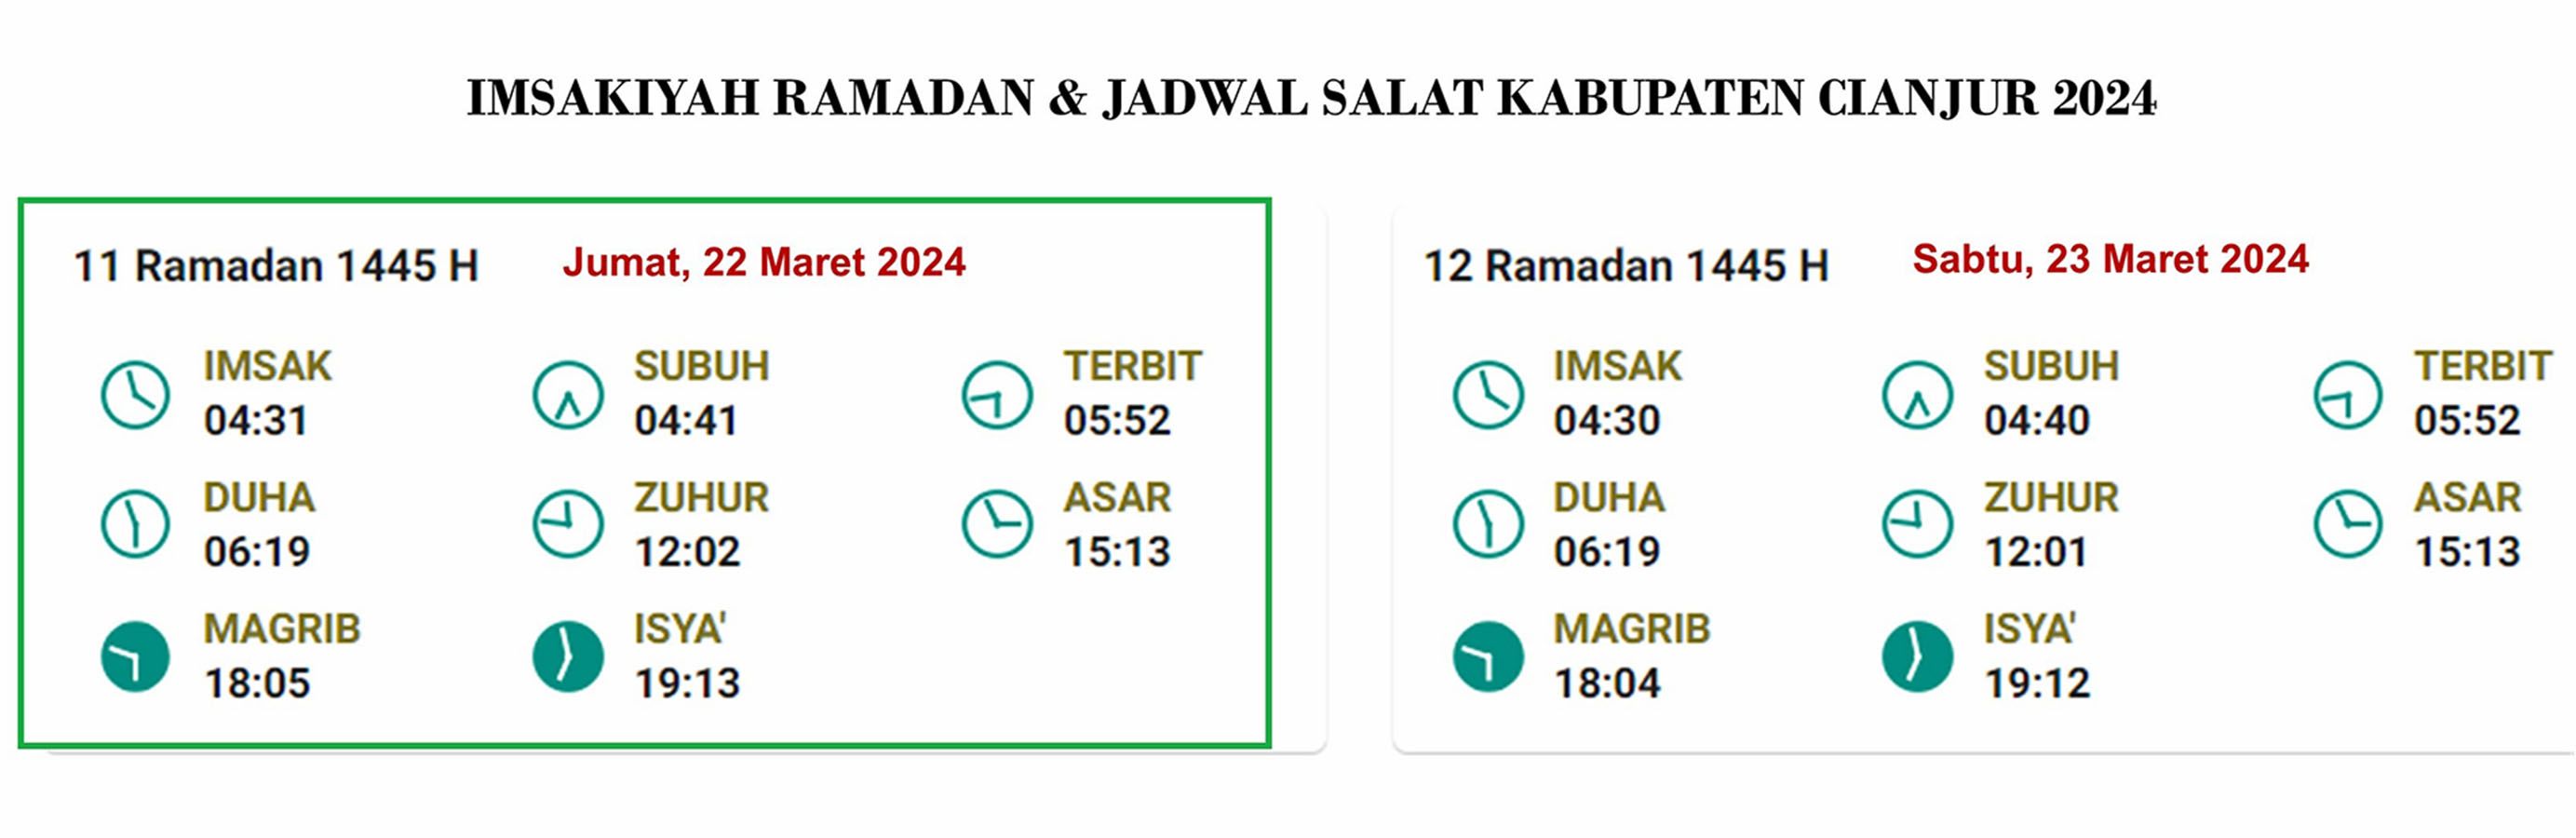 Cianjur, Jadwal Imsakiyah dan Salat, Sabtu, 23 Maret 2024 